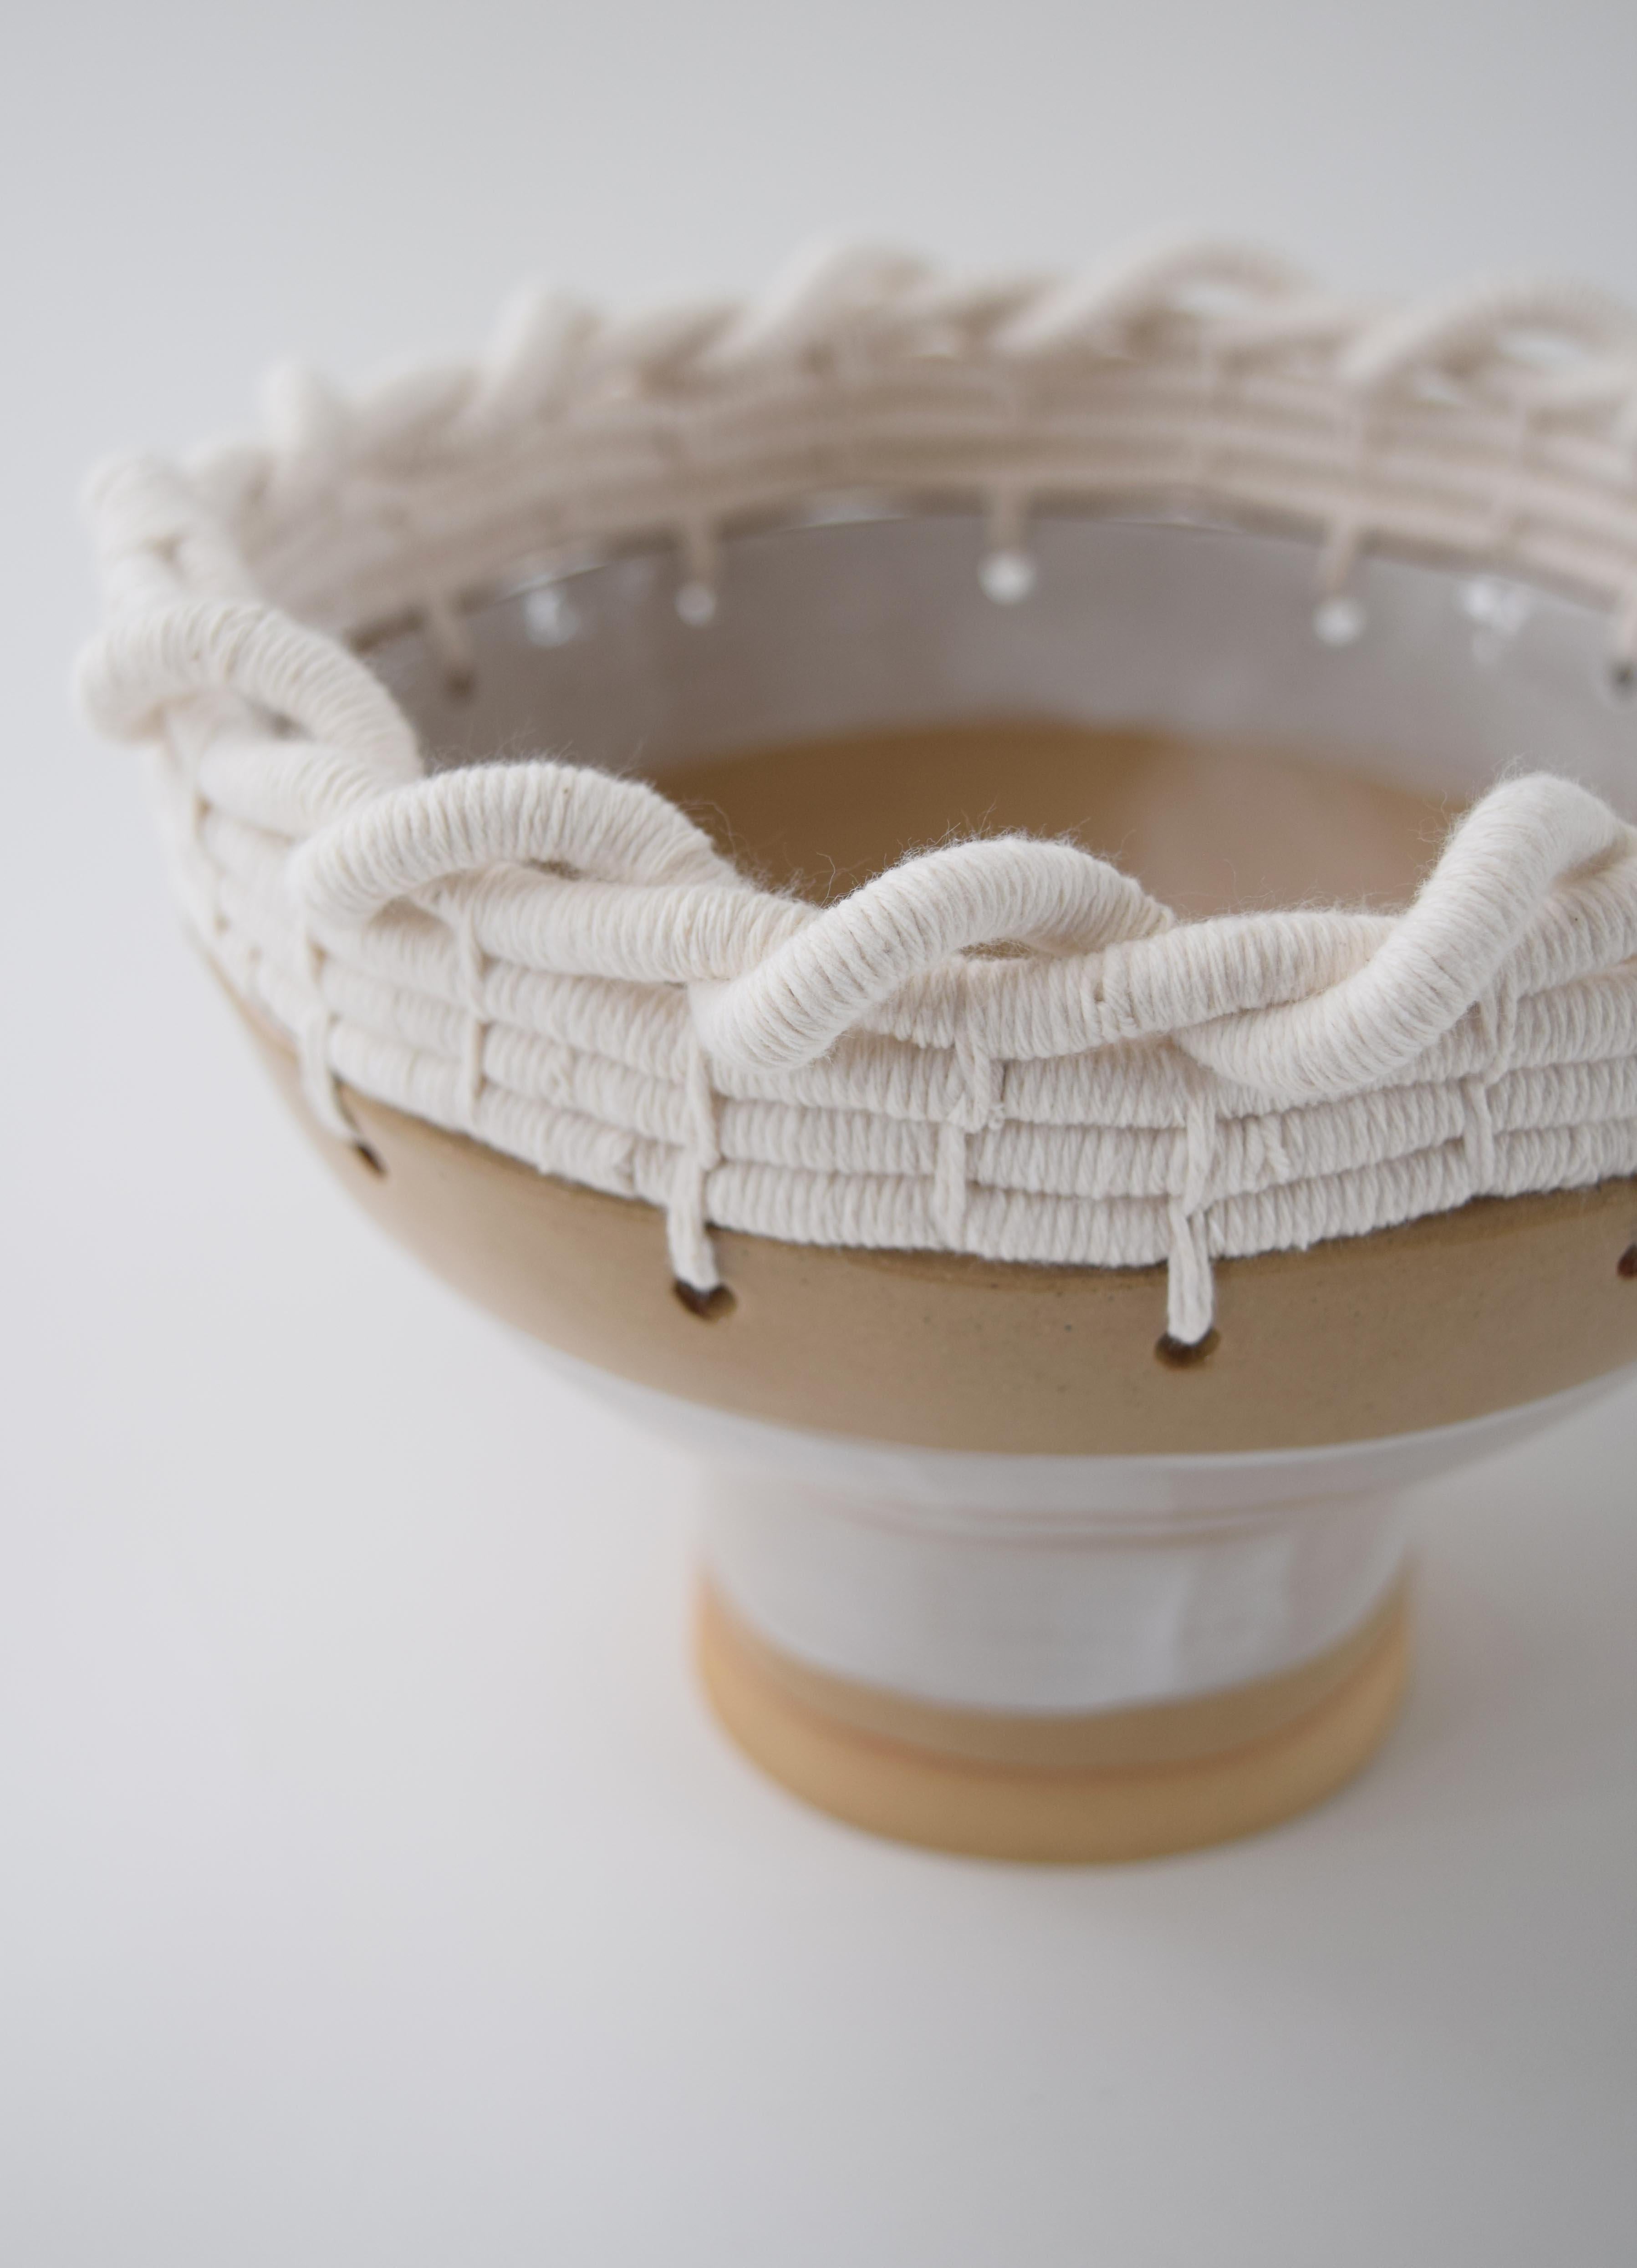 Organic Modern OOAK Handmade Ceramic Bowl #799, Hand Glazed White Stripes & Woven Cotton Upper